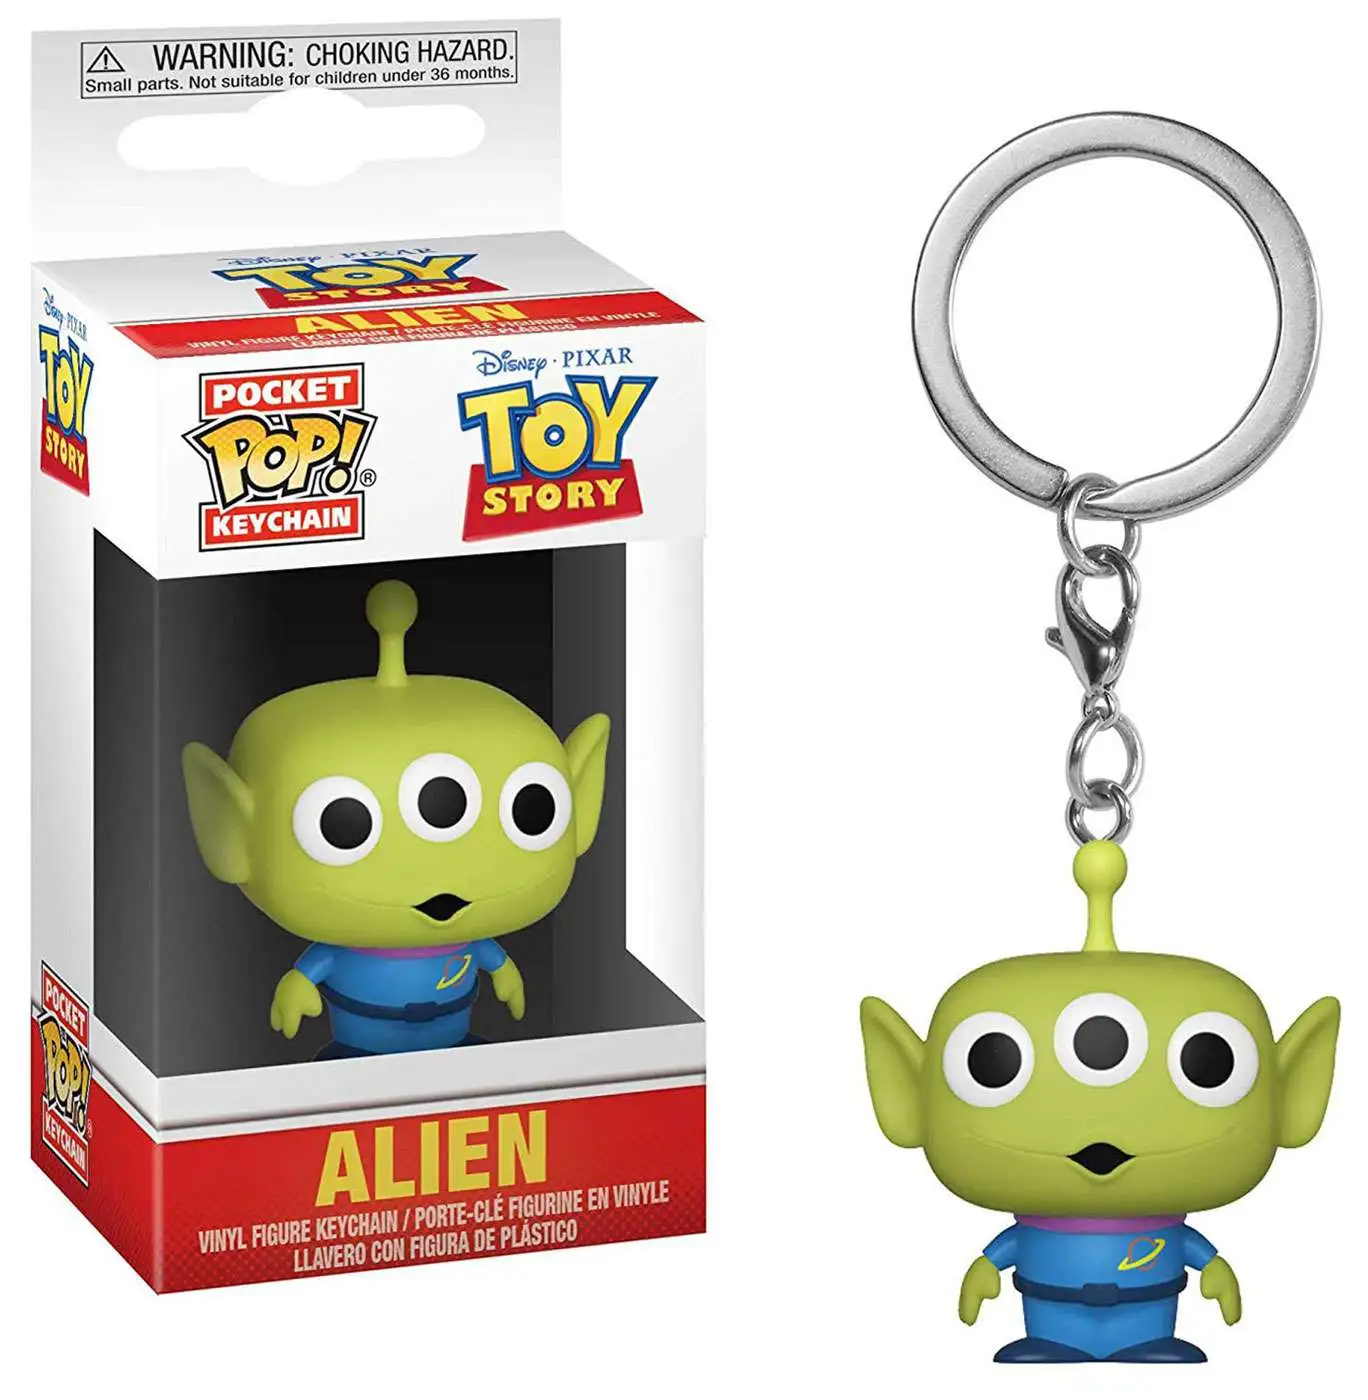 Funko Disney / Pixar Toy Story Pocket POP! Keychain Alien Keychain